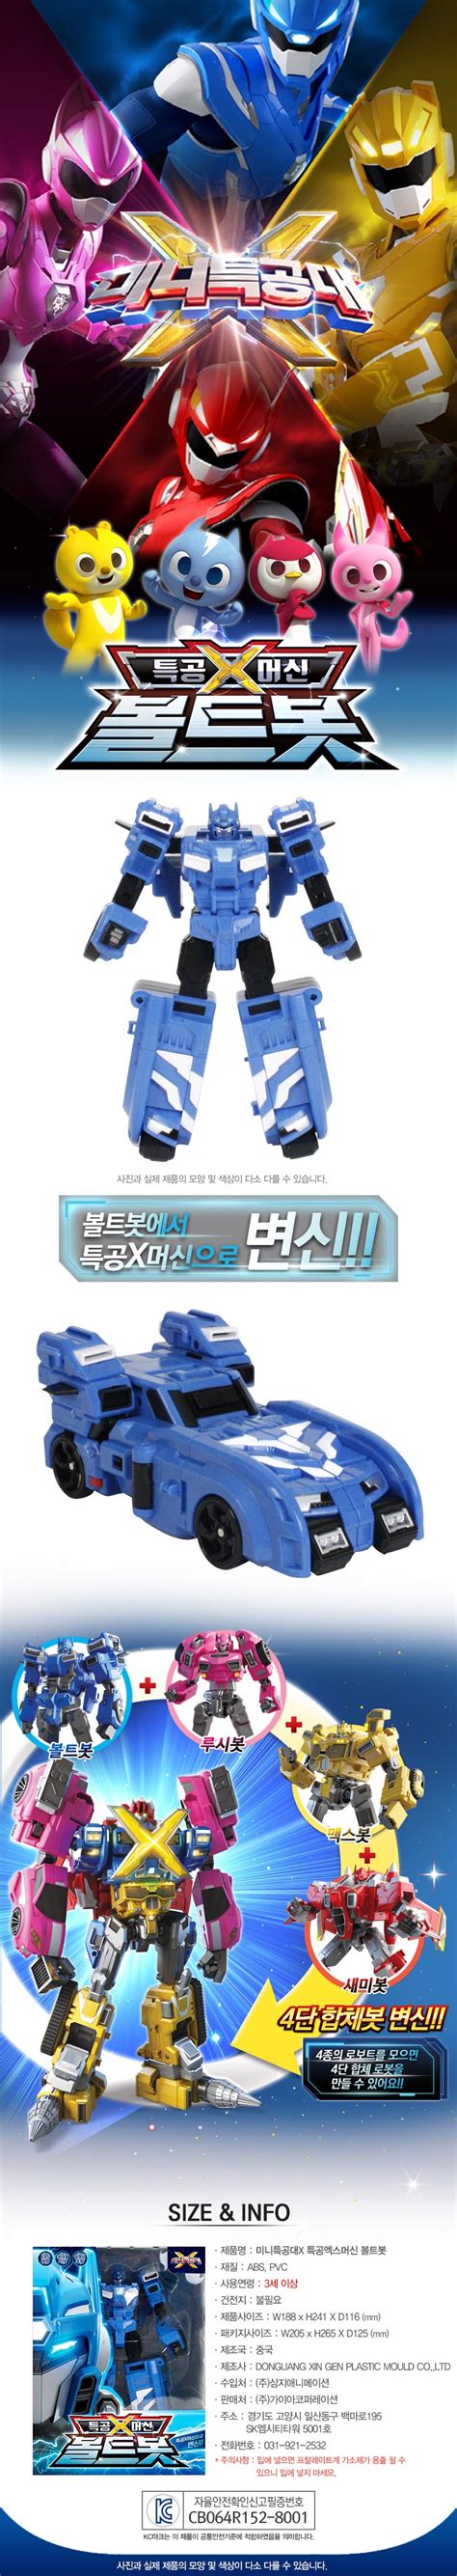 Miniforce Mini Force X Boltbot Ranger Bolt Bot Blue Transformer Robot